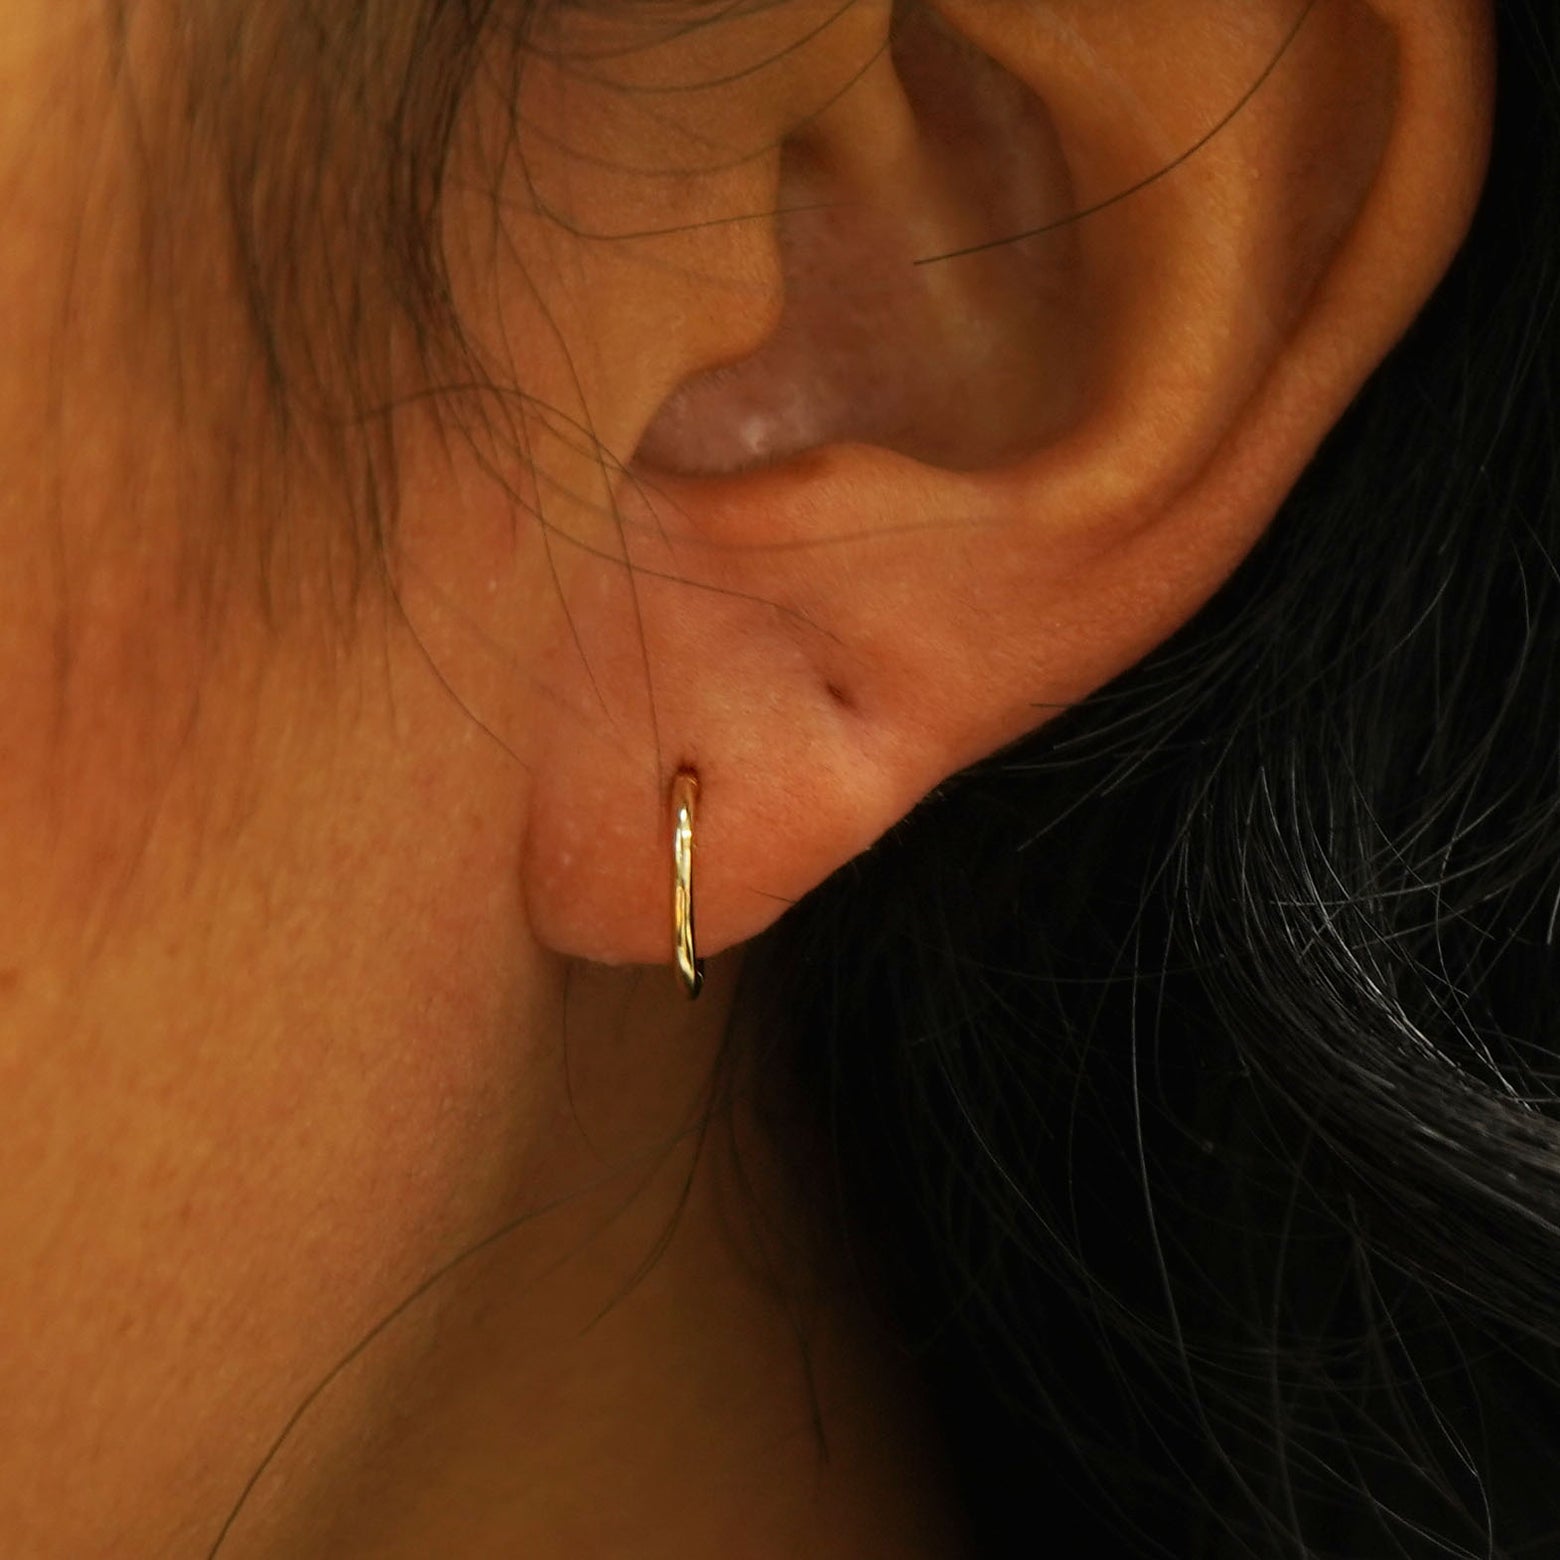 A model's ear wearing a 14k gold Small Seamless Huggie Hoop / Piercing